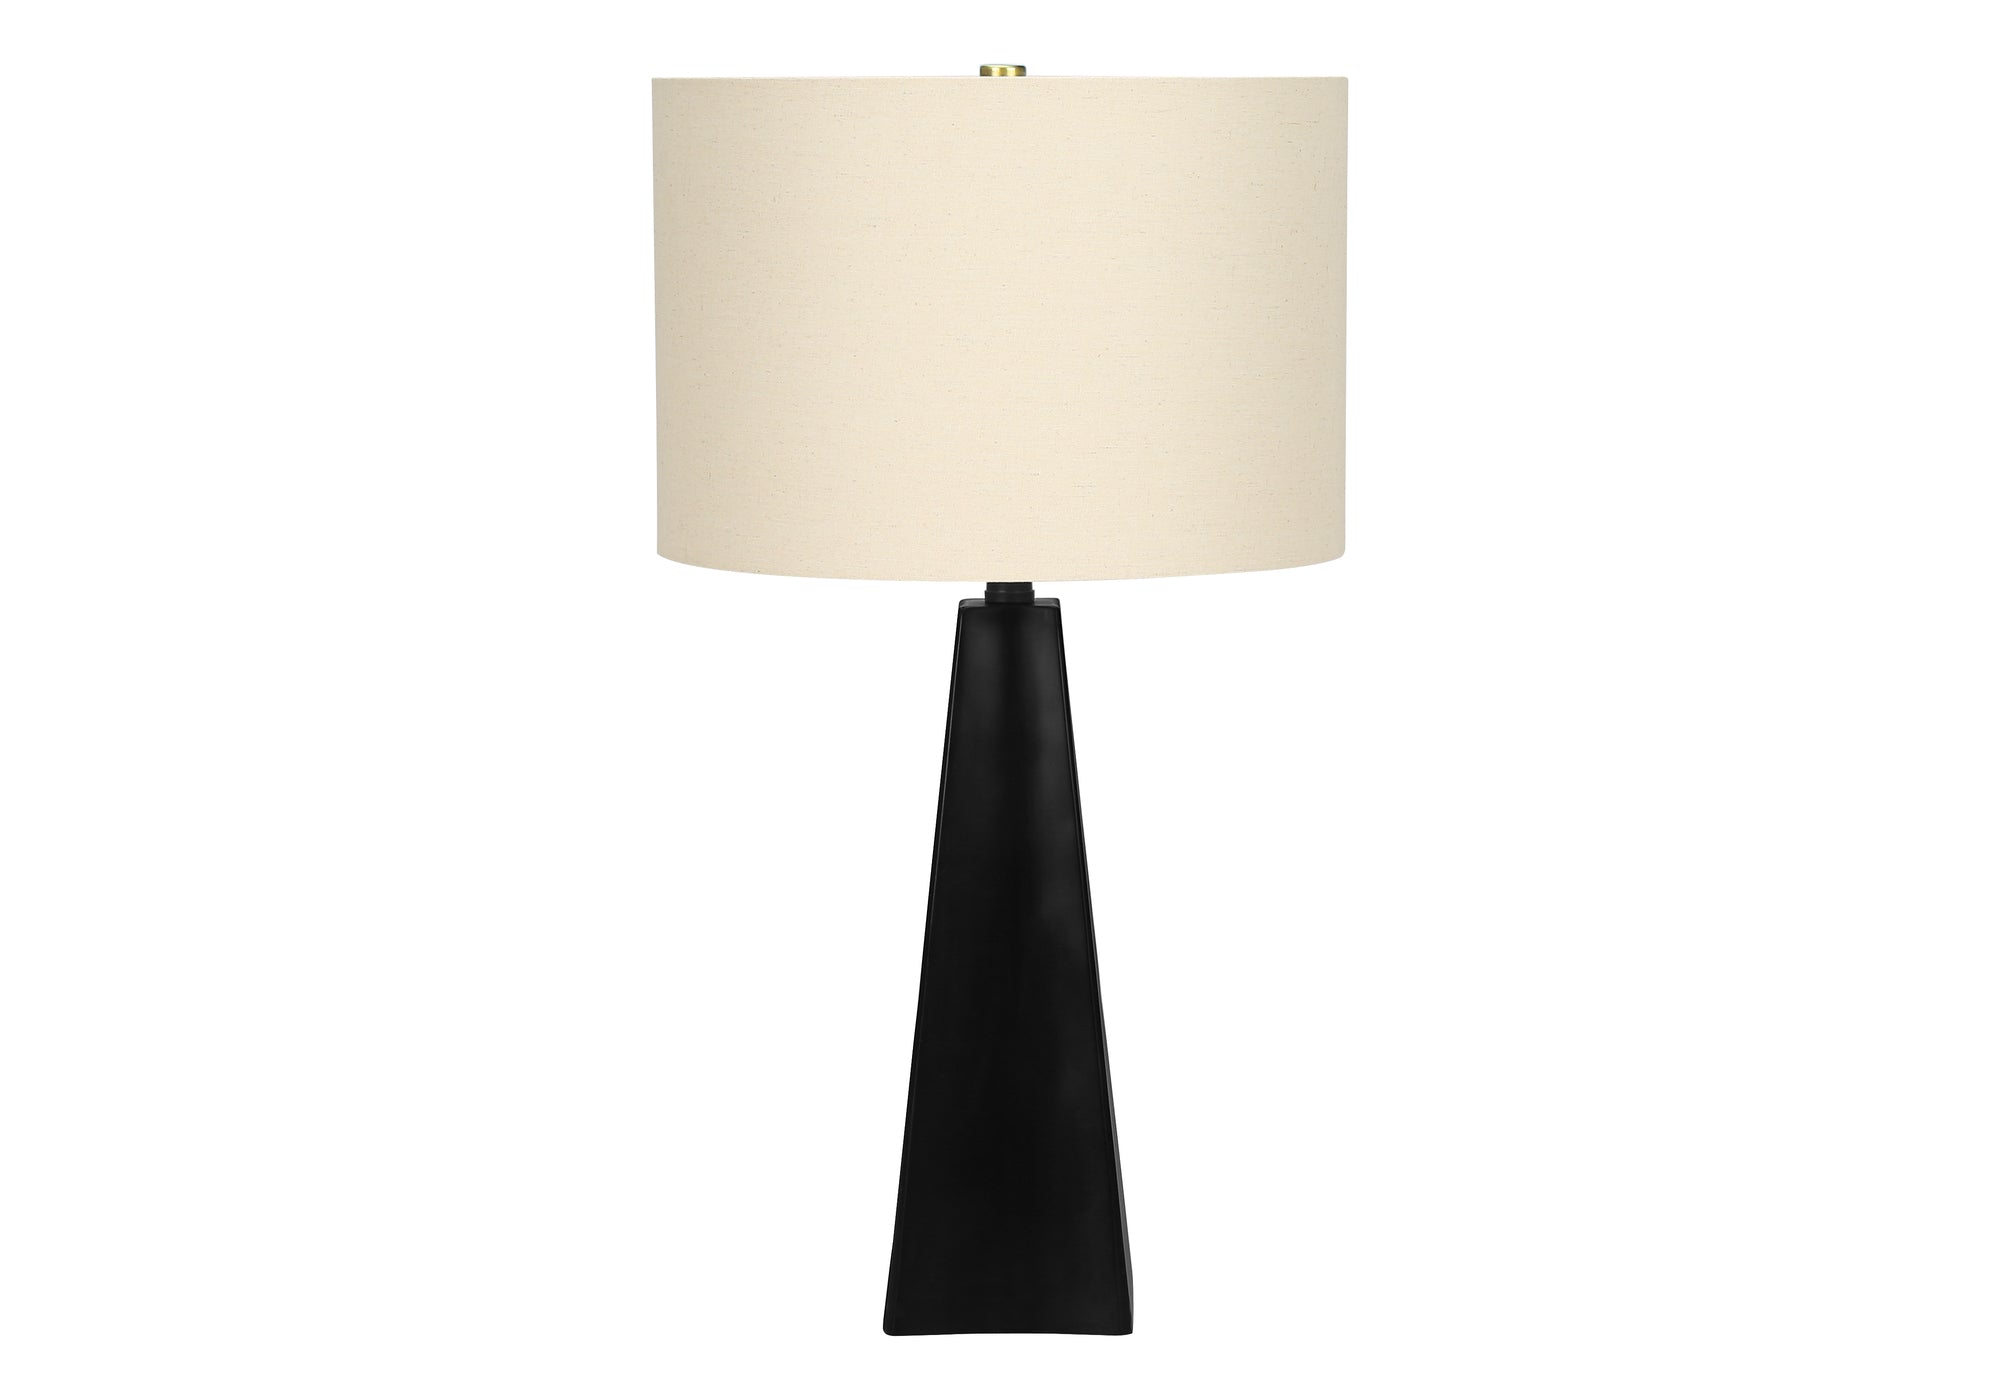 MN-609726    Lighting, 27"H, Table Lamp, Black Resin, Beige Shade, Modern